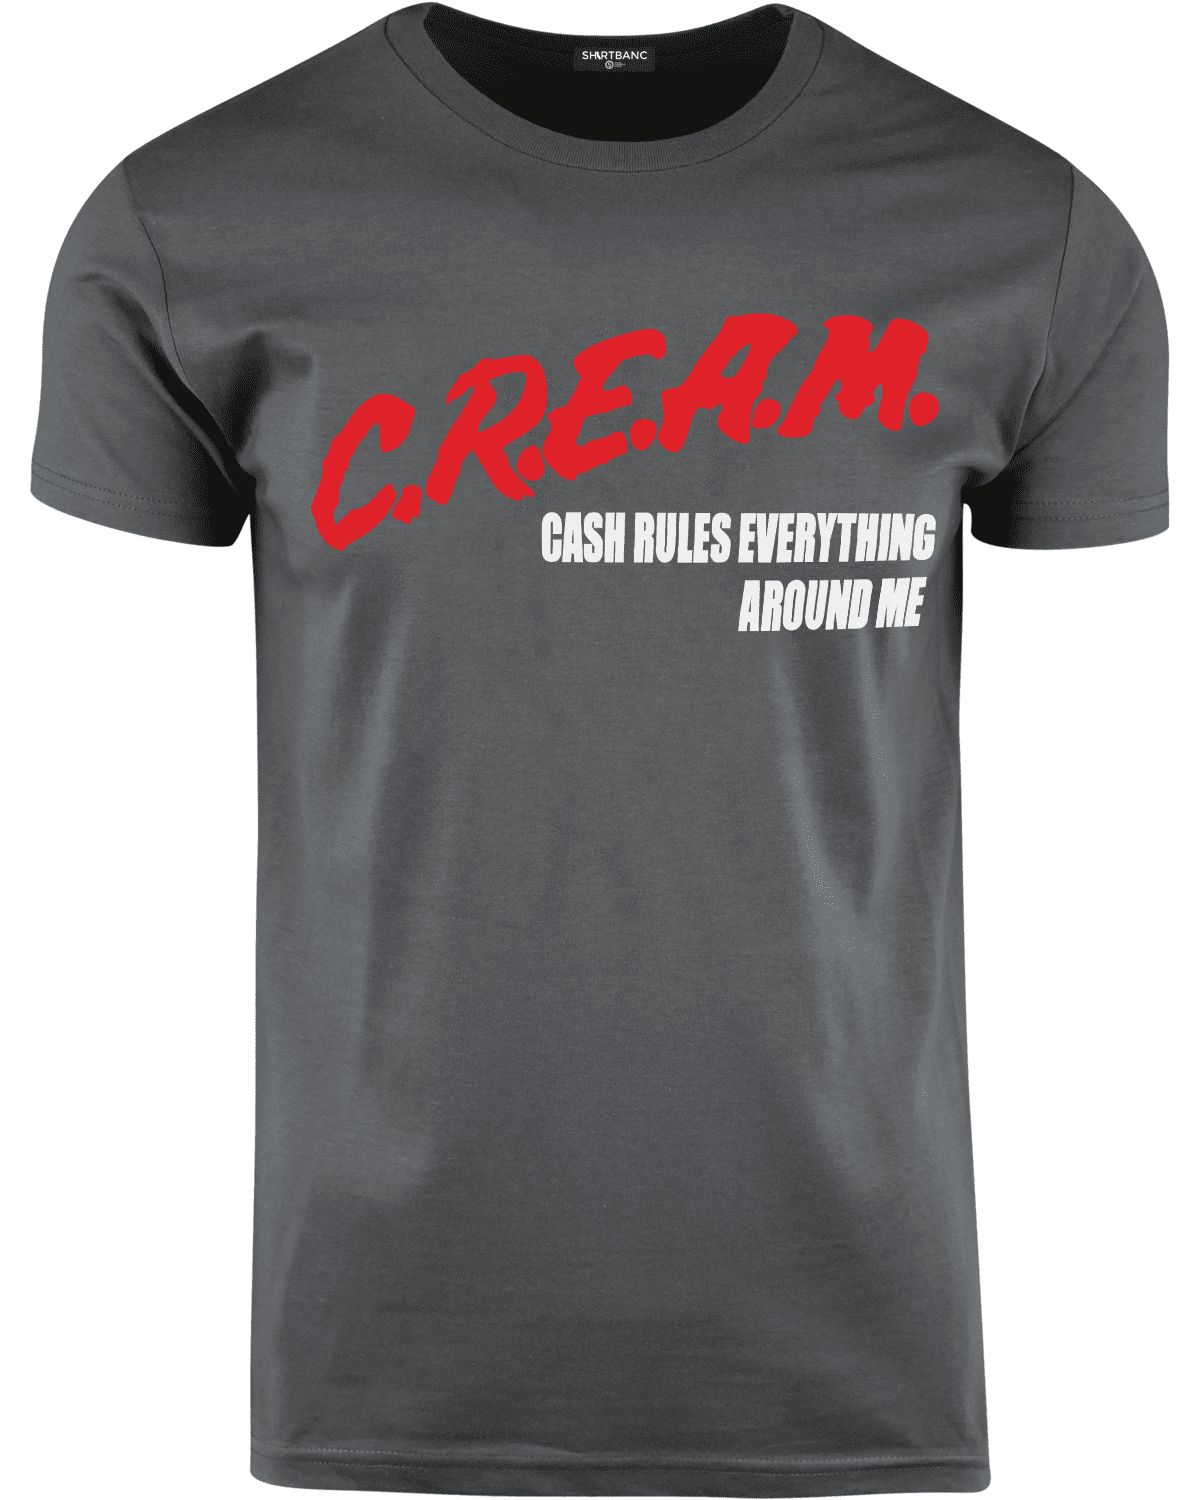 Cash Mules Everything Around Me Women's T-Shirt